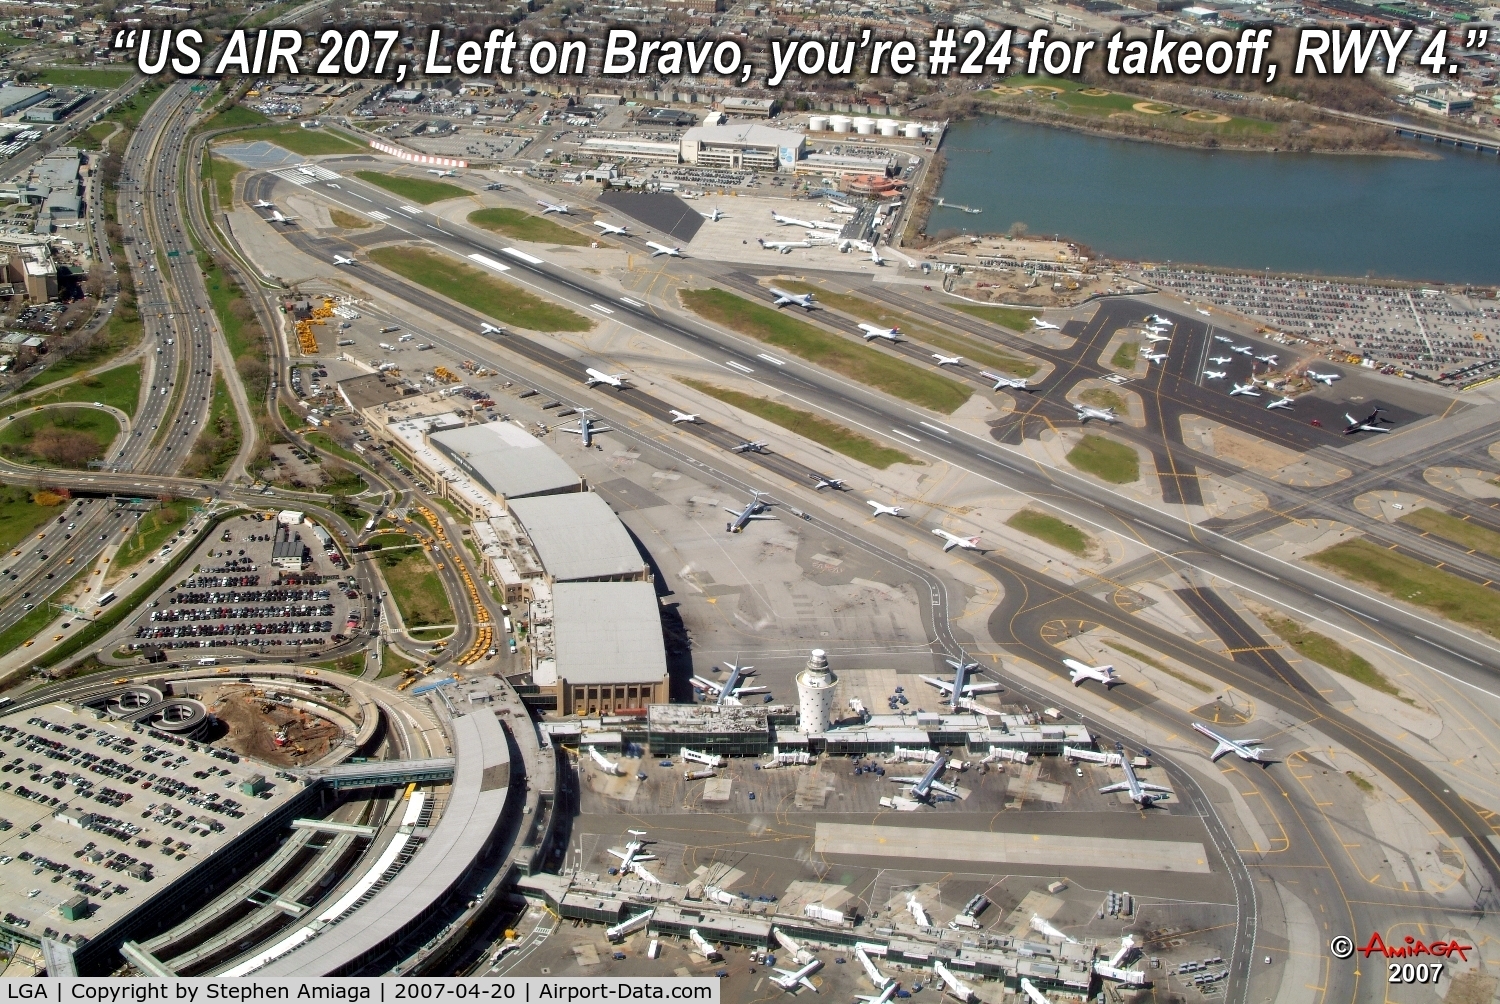 La Guardia Airport (LGA) - Transcript Fake, but 23 planes in line.  No GA planes in line.